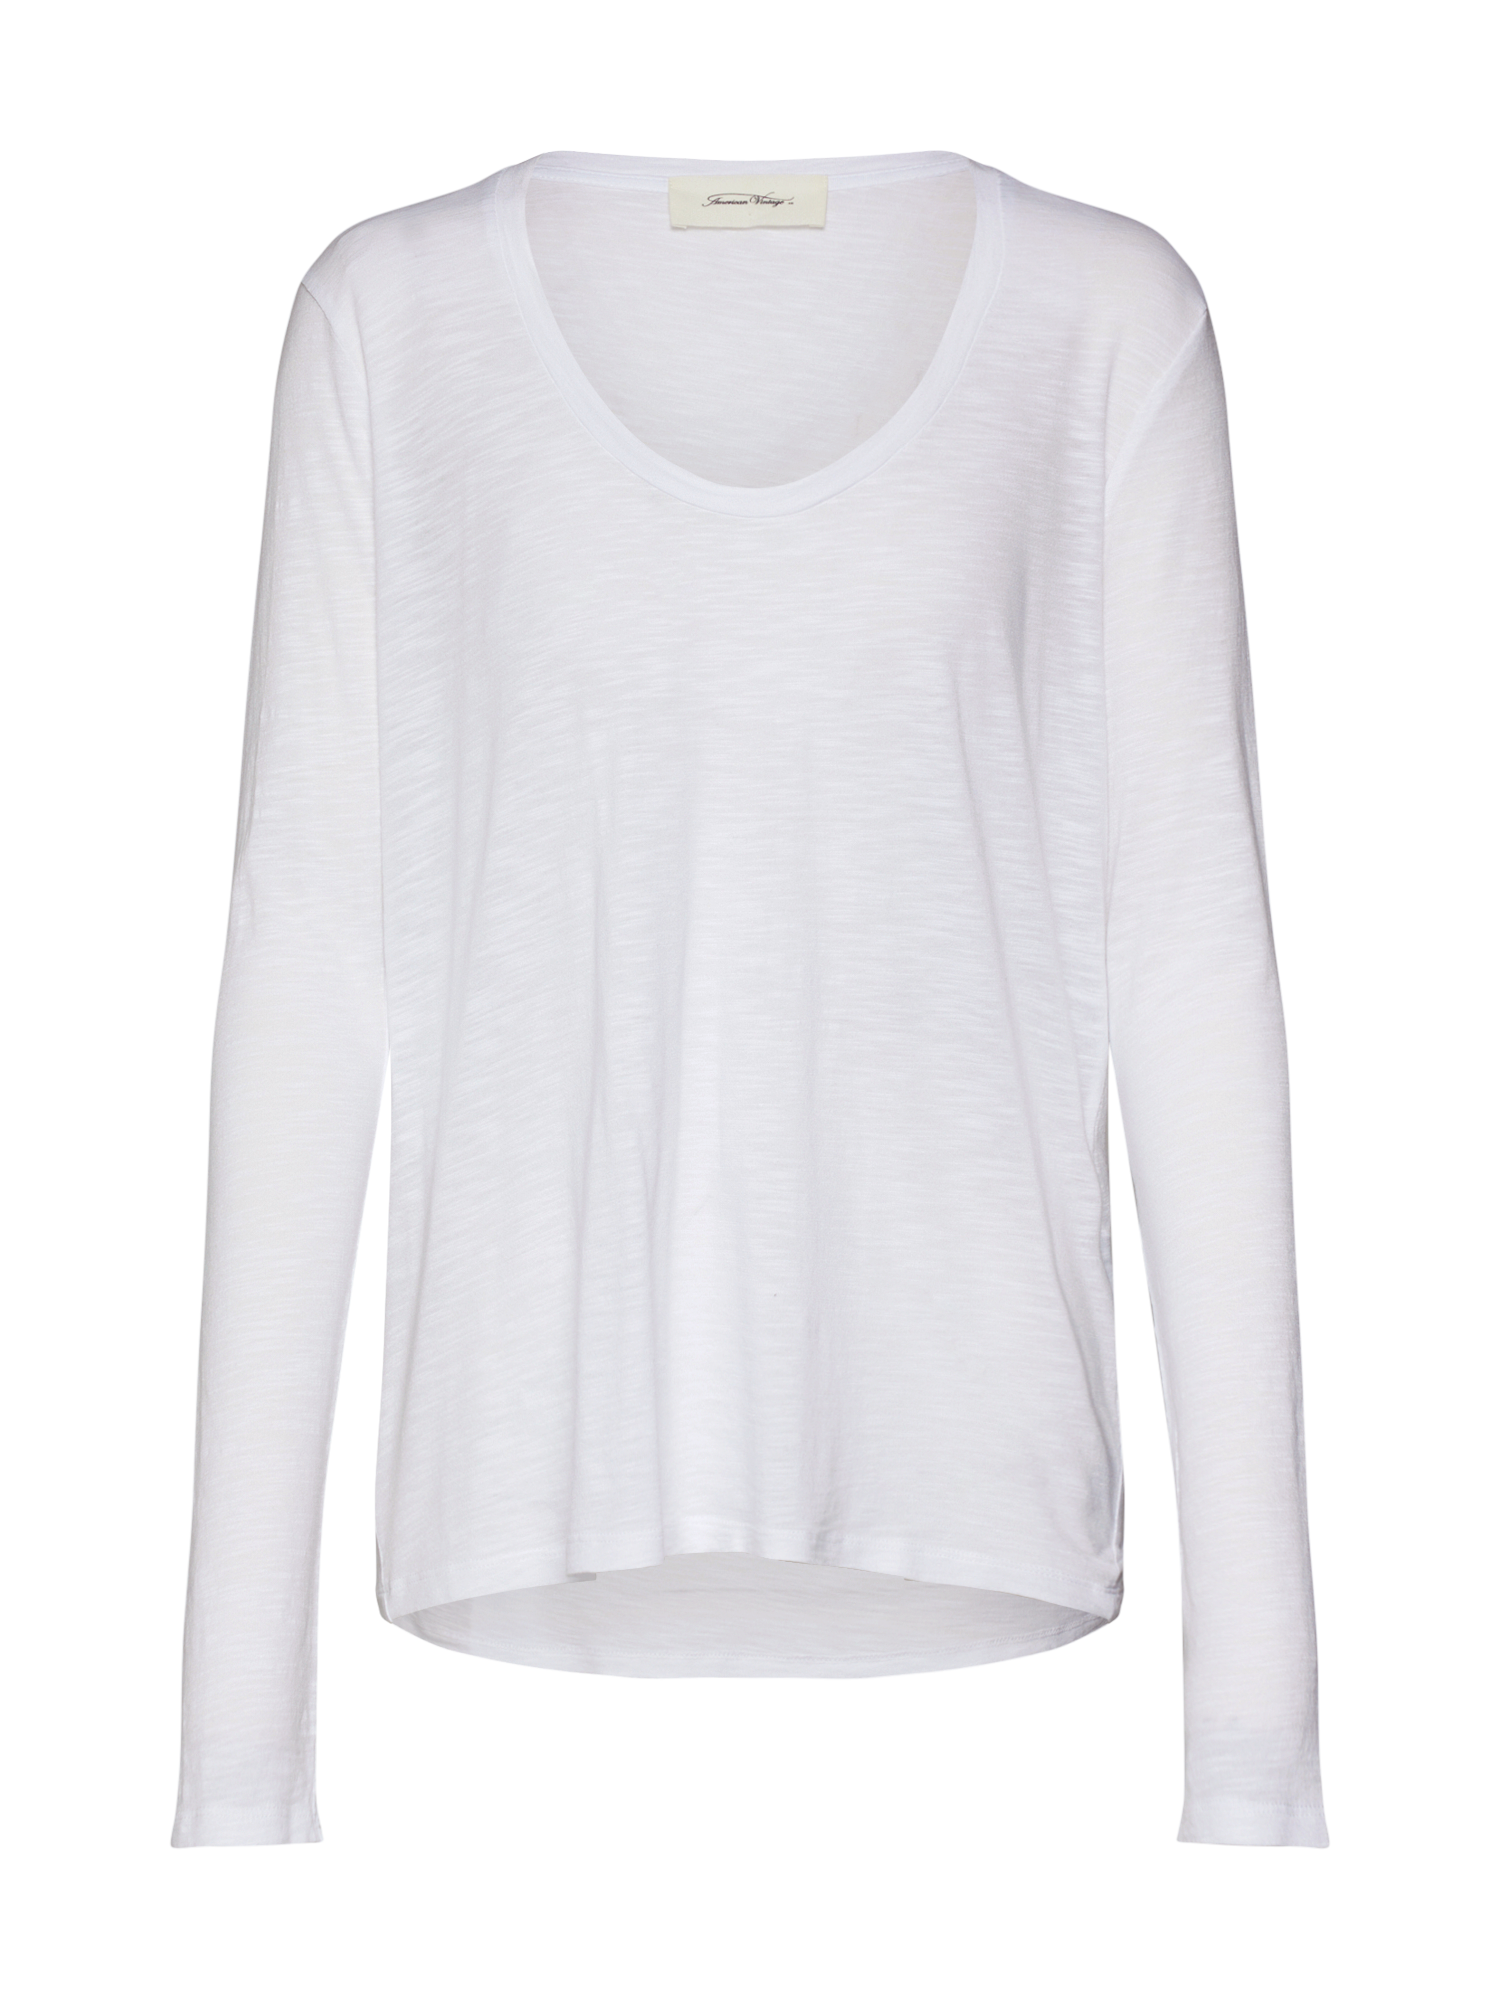 Abbigliamento Donna AMERICAN VINTAGE Maglietta JACKSONVILLE in Bianco 